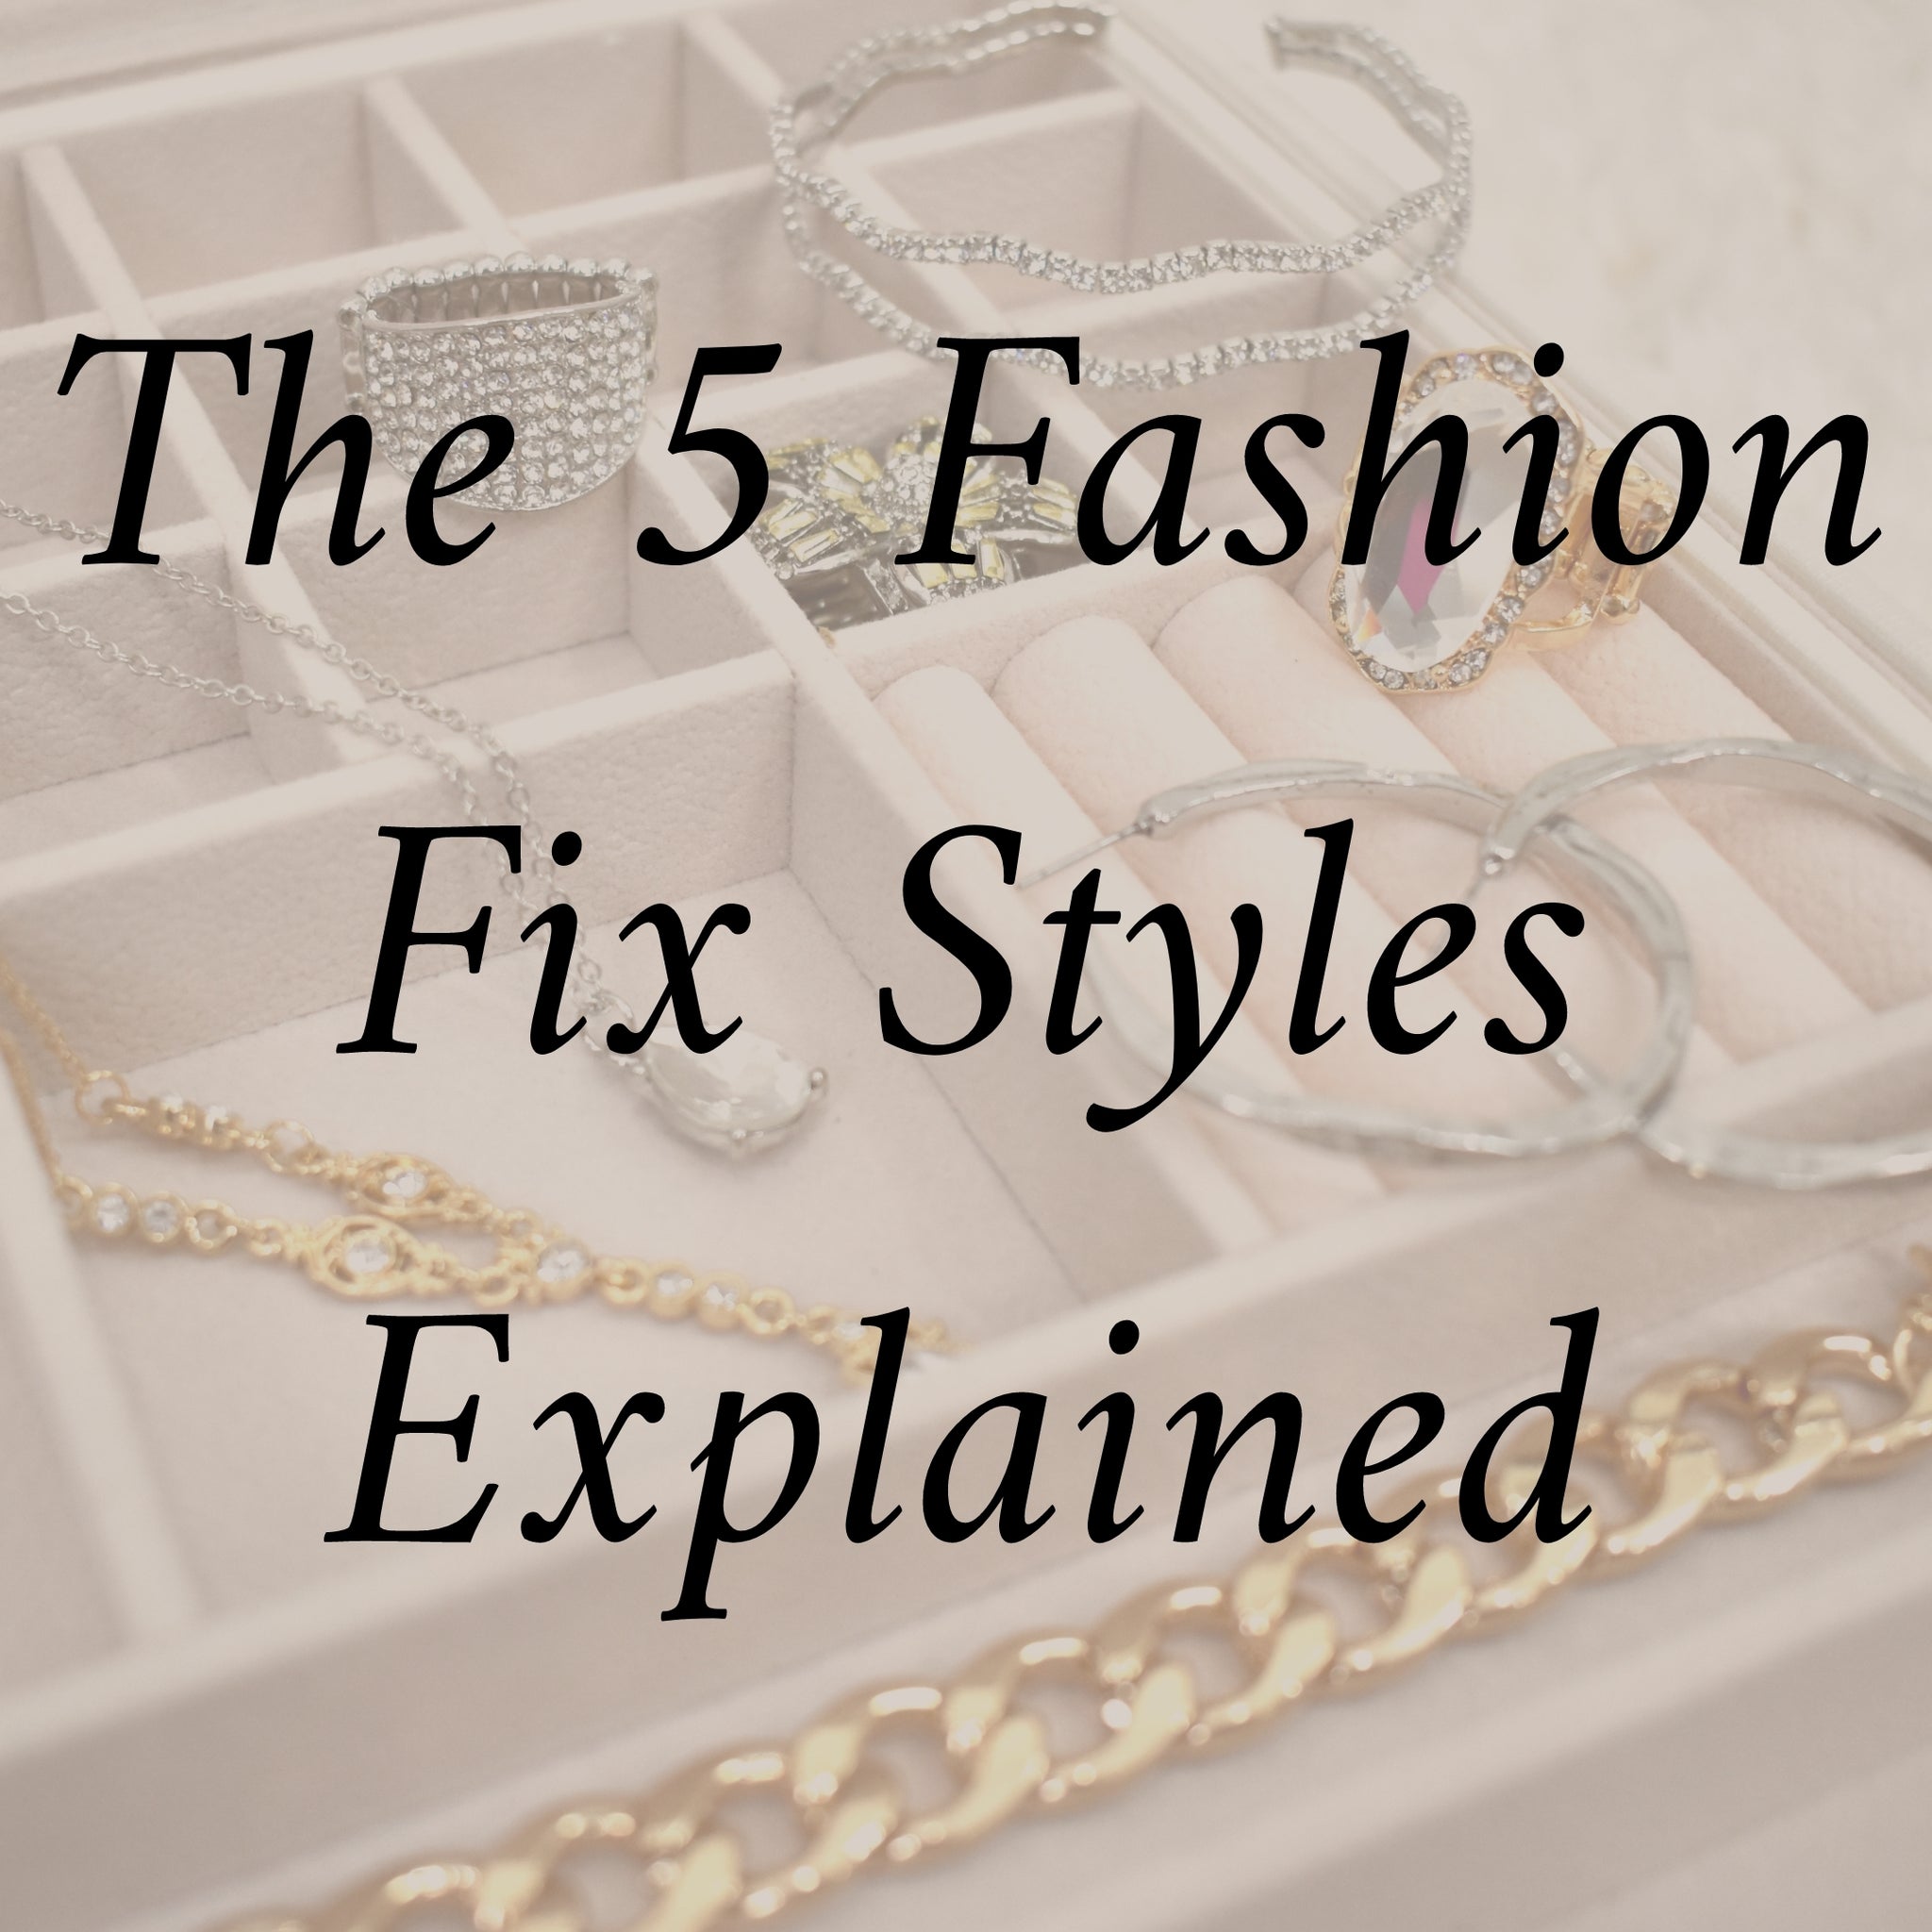 Fashion Fix Styles Explained